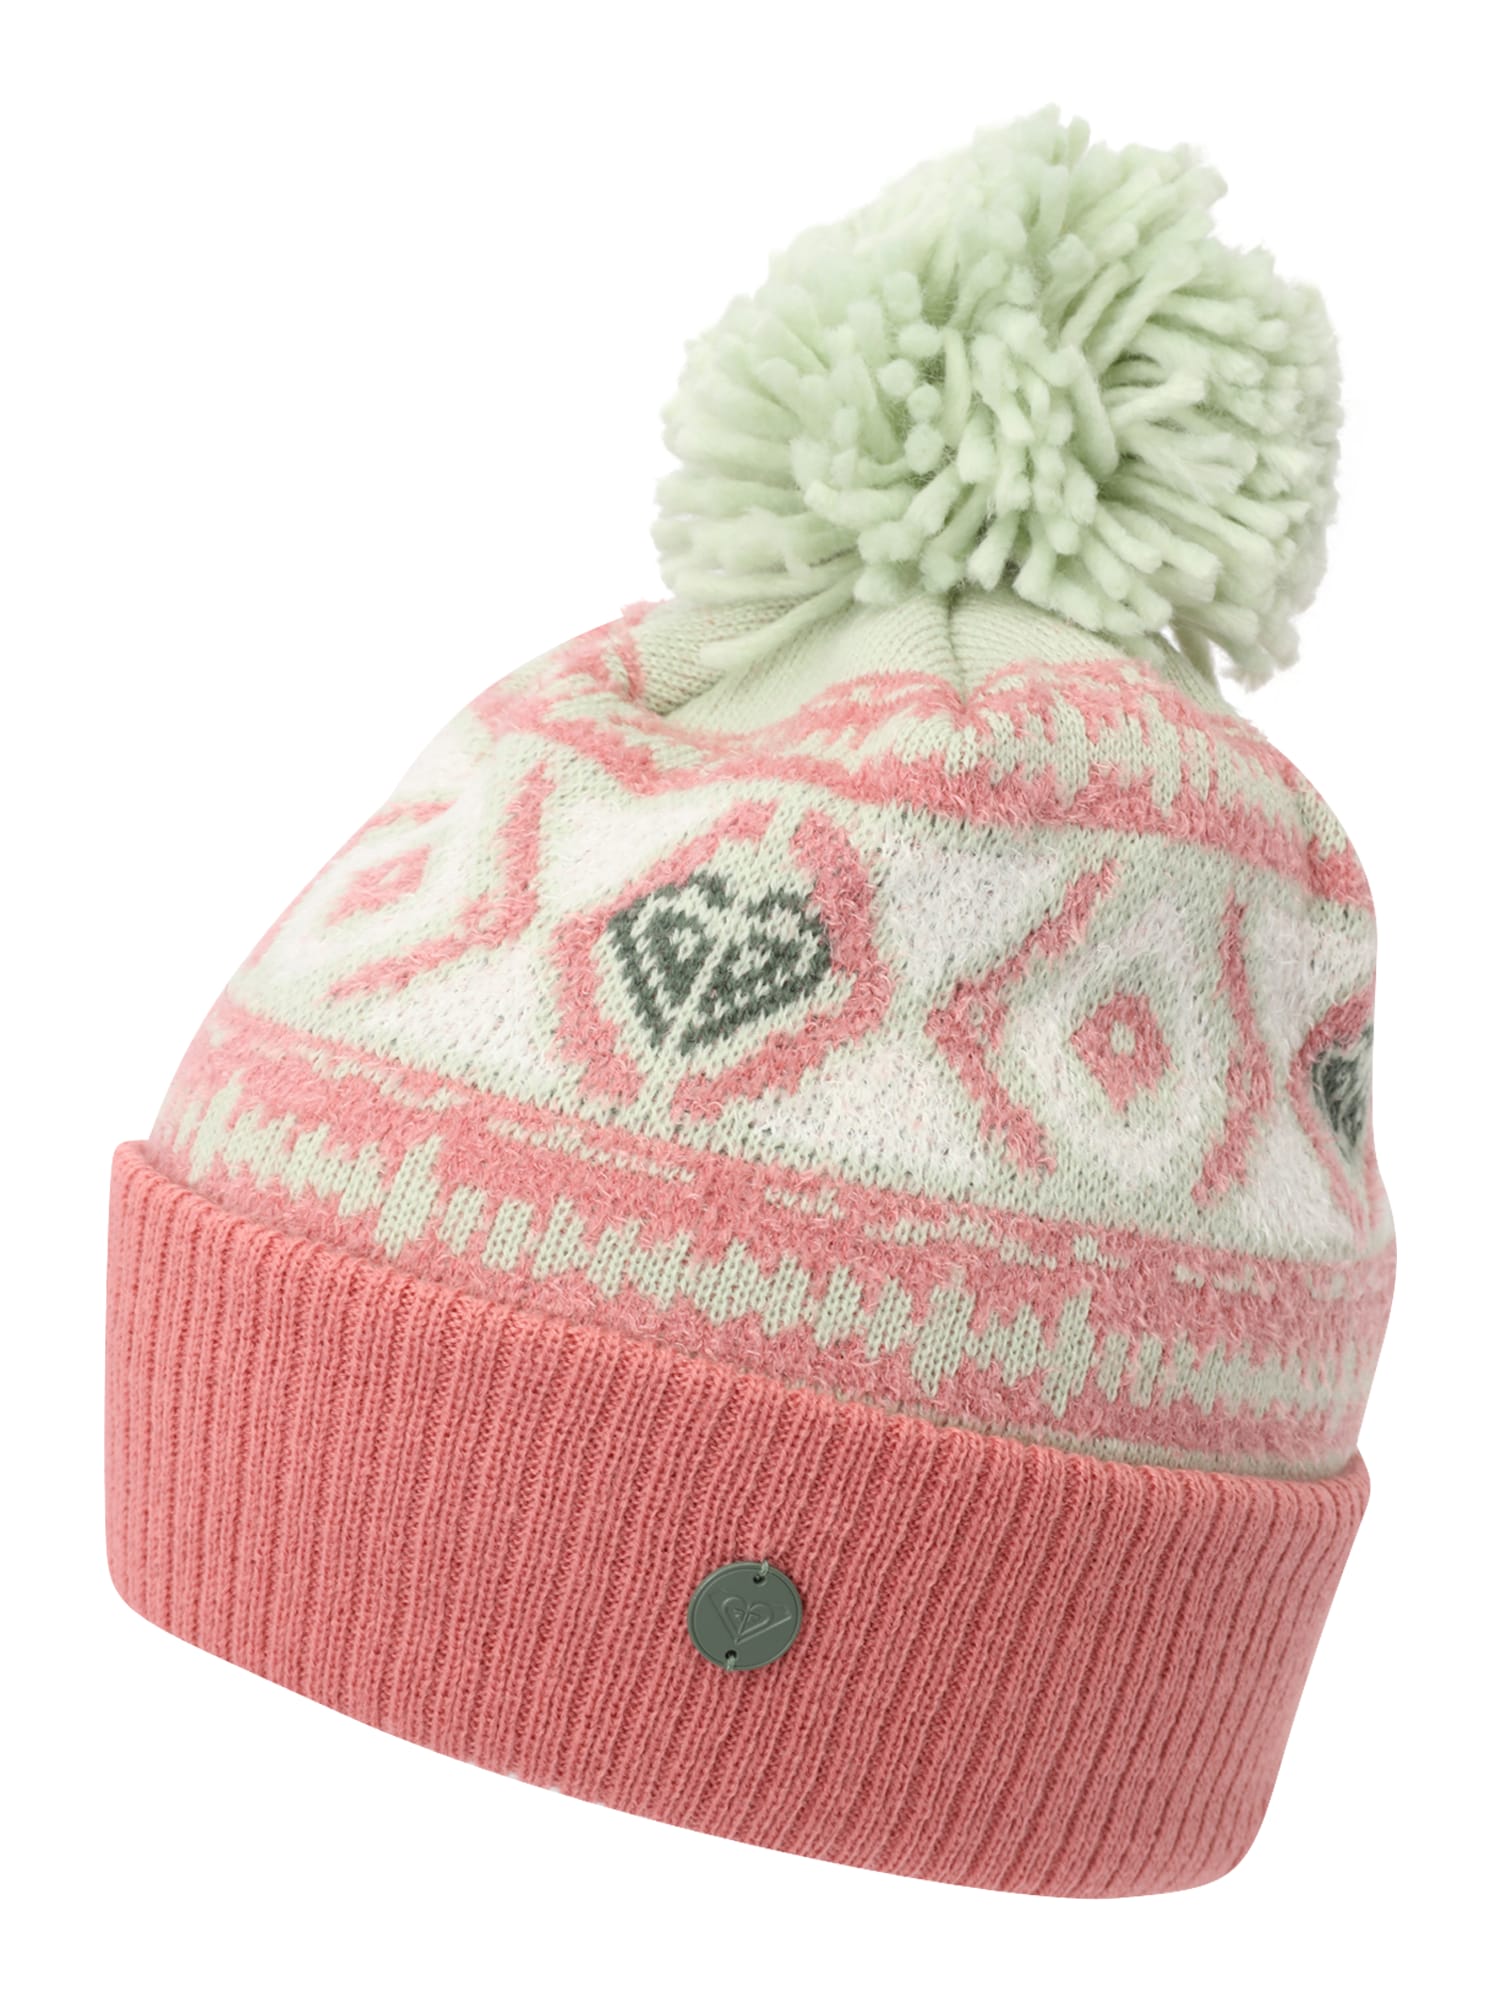 ROXY Sportinė kepurė 'GOLDHOPE' pastelinė žalia / rožinė / balta